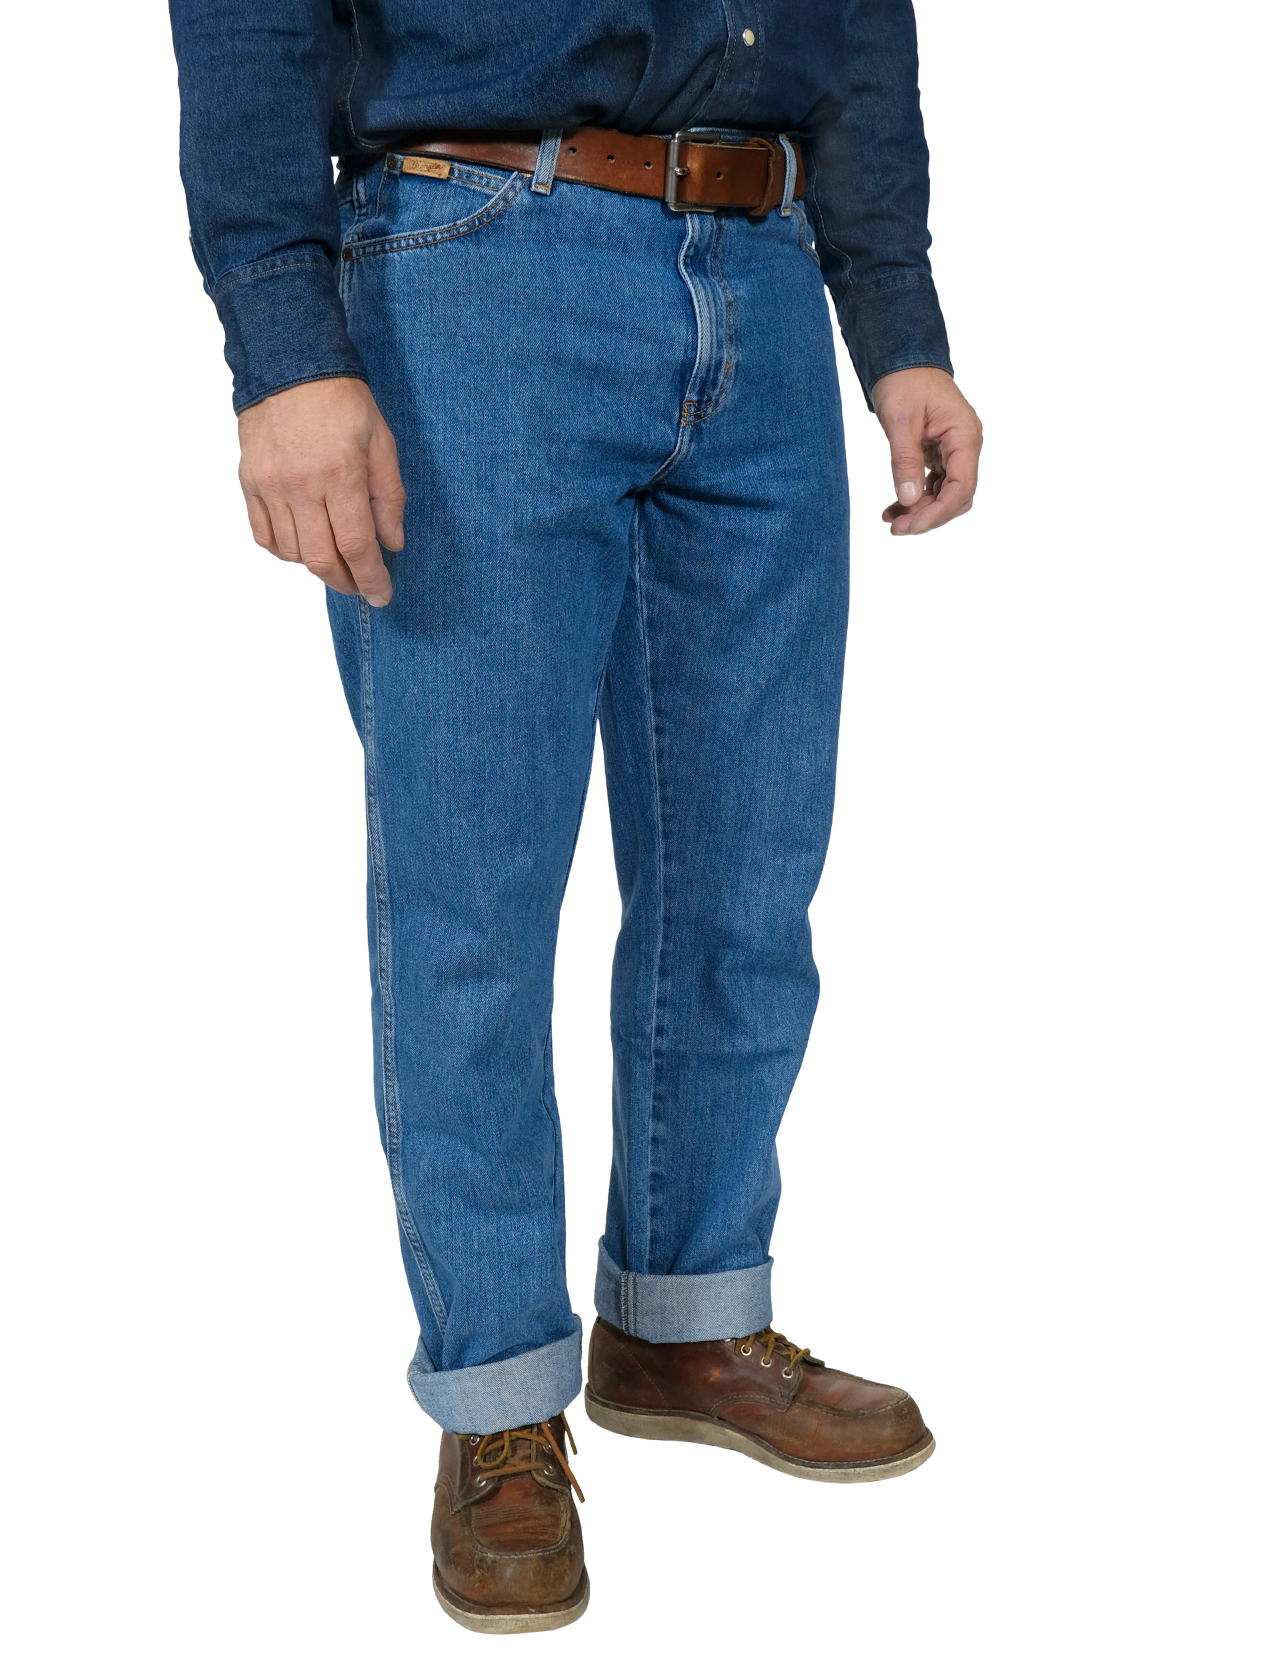 Wrangler - Texas Non-Stretch Jeans - Stonewash